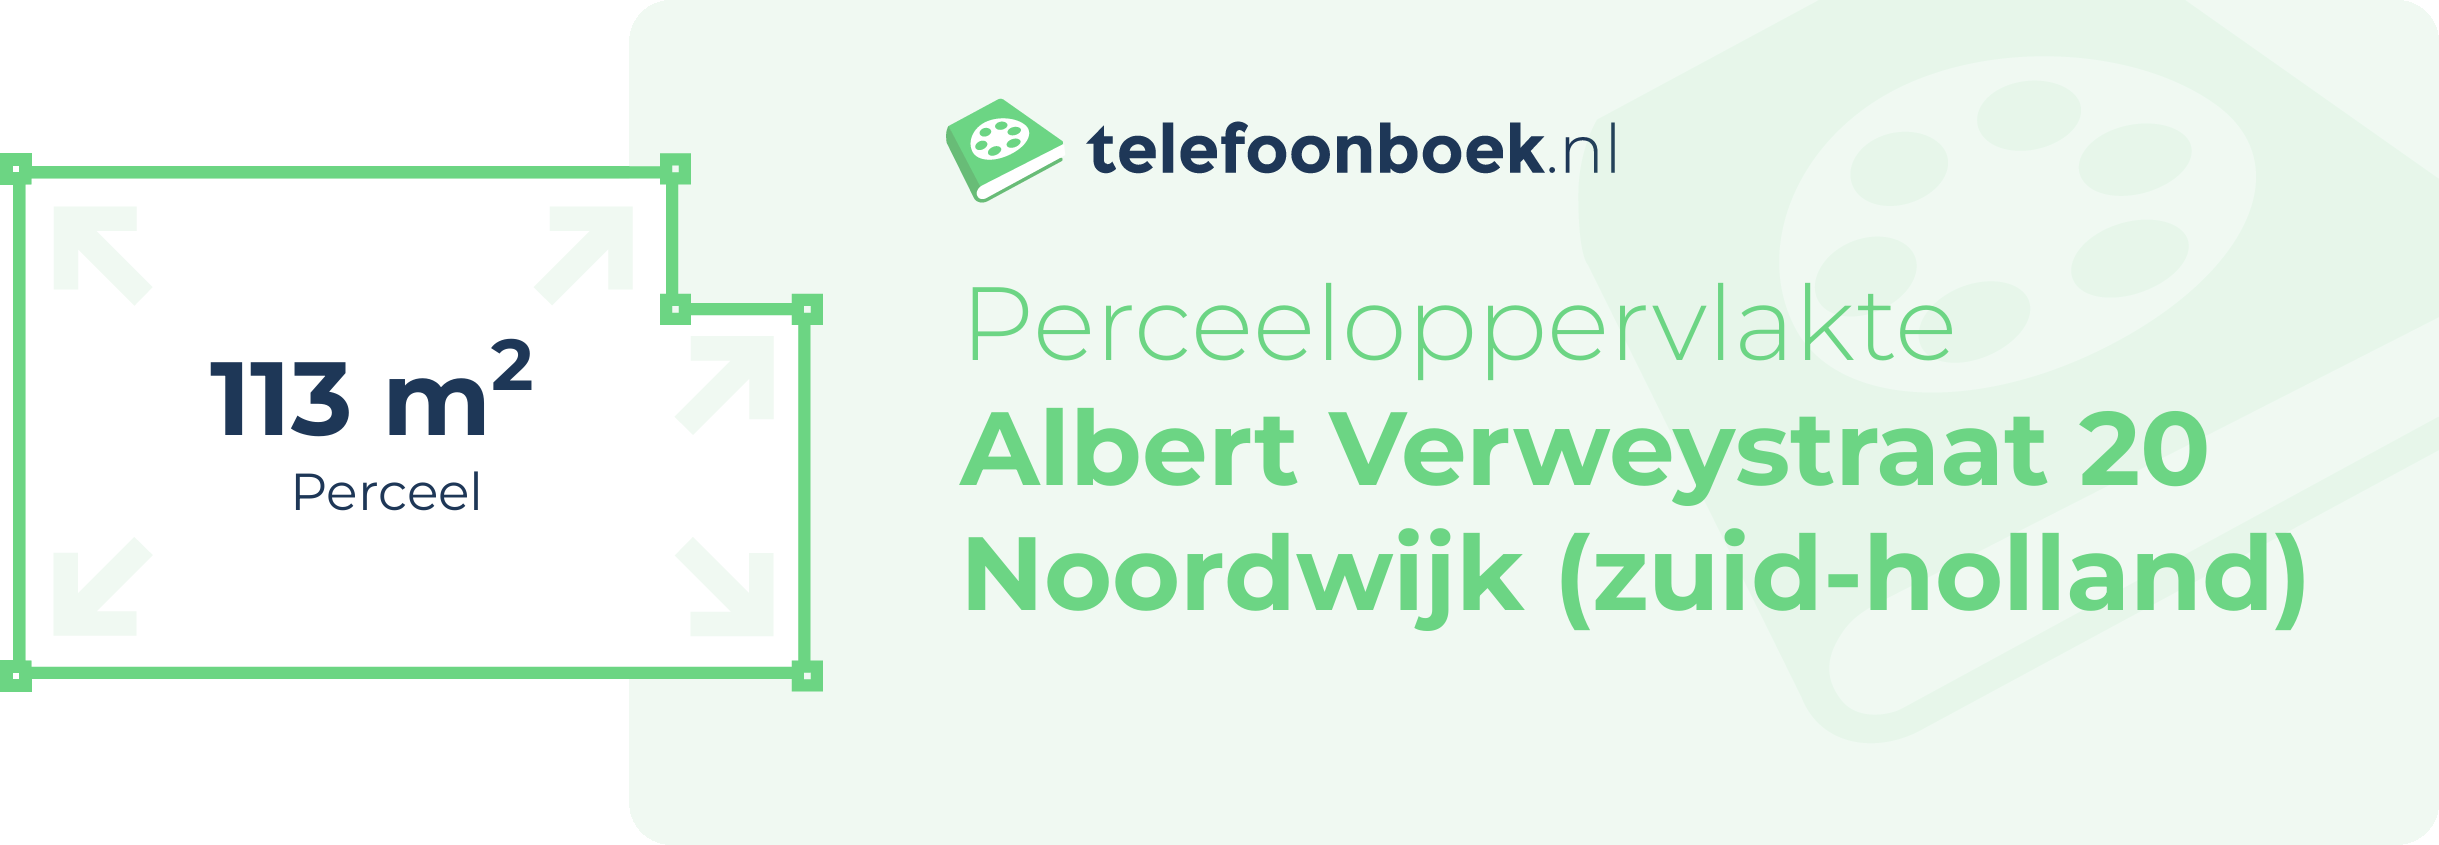 Perceeloppervlakte Albert Verweystraat 20 Noordwijk (Zuid-Holland)